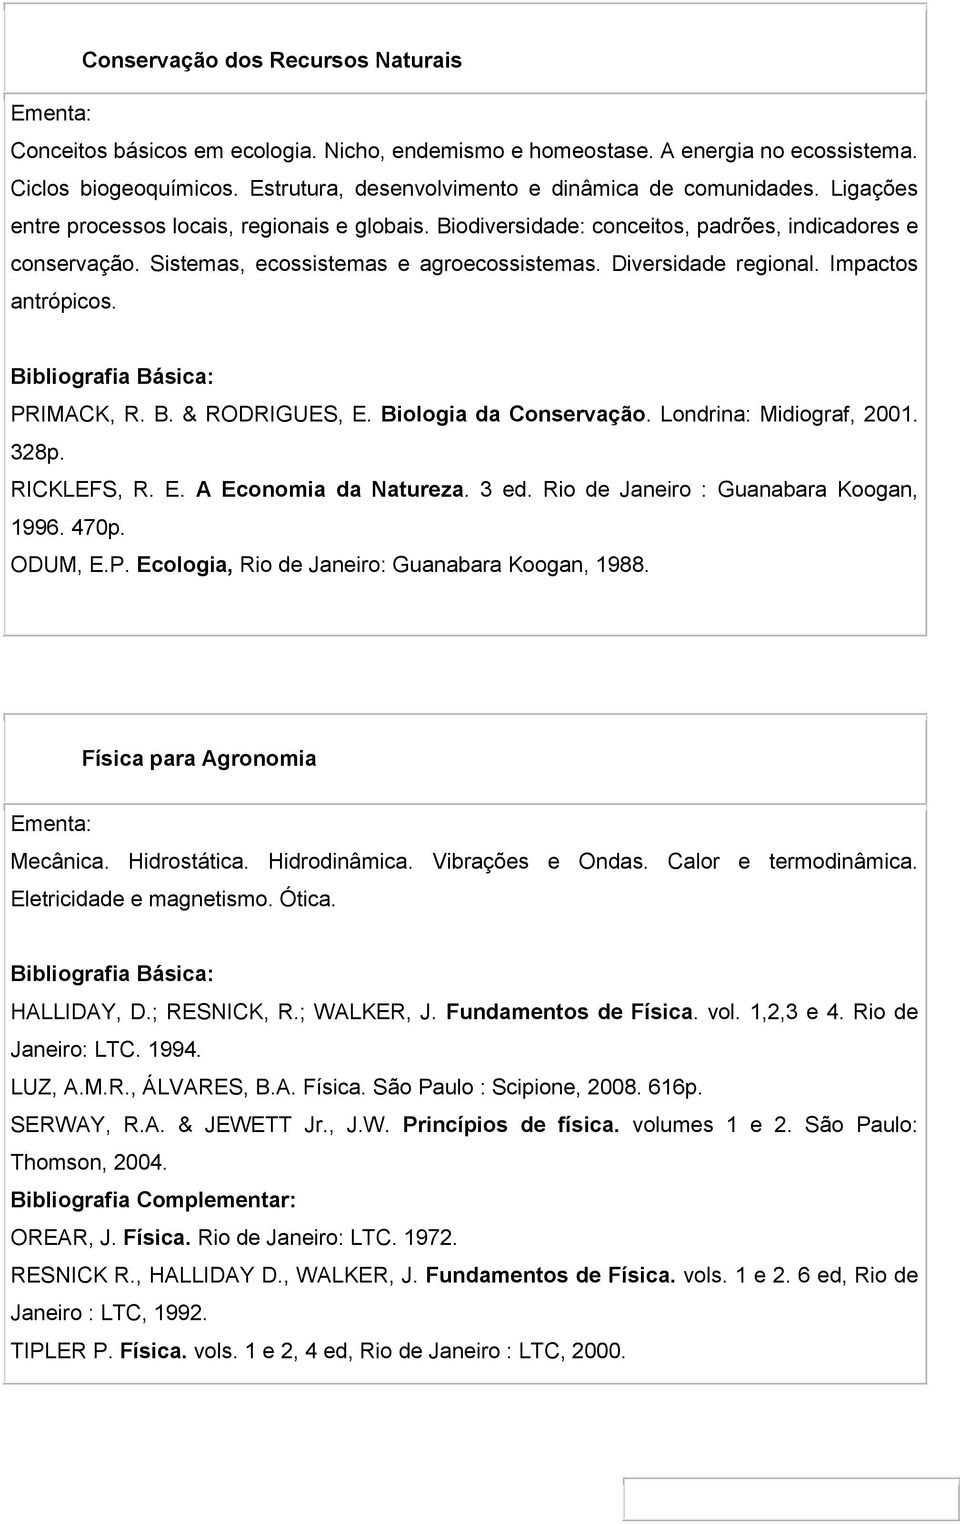 Impactos antrópicos. PRIMACK, R. B. & RODRIGUES, E. Biologia da Conservação. Londrina: Midiograf, 20. 328p. RICKLEFS, R. E. A Economia da Natureza. 3 ed. Rio de Janeiro : Guanabara Koogan, 1996. 470p.